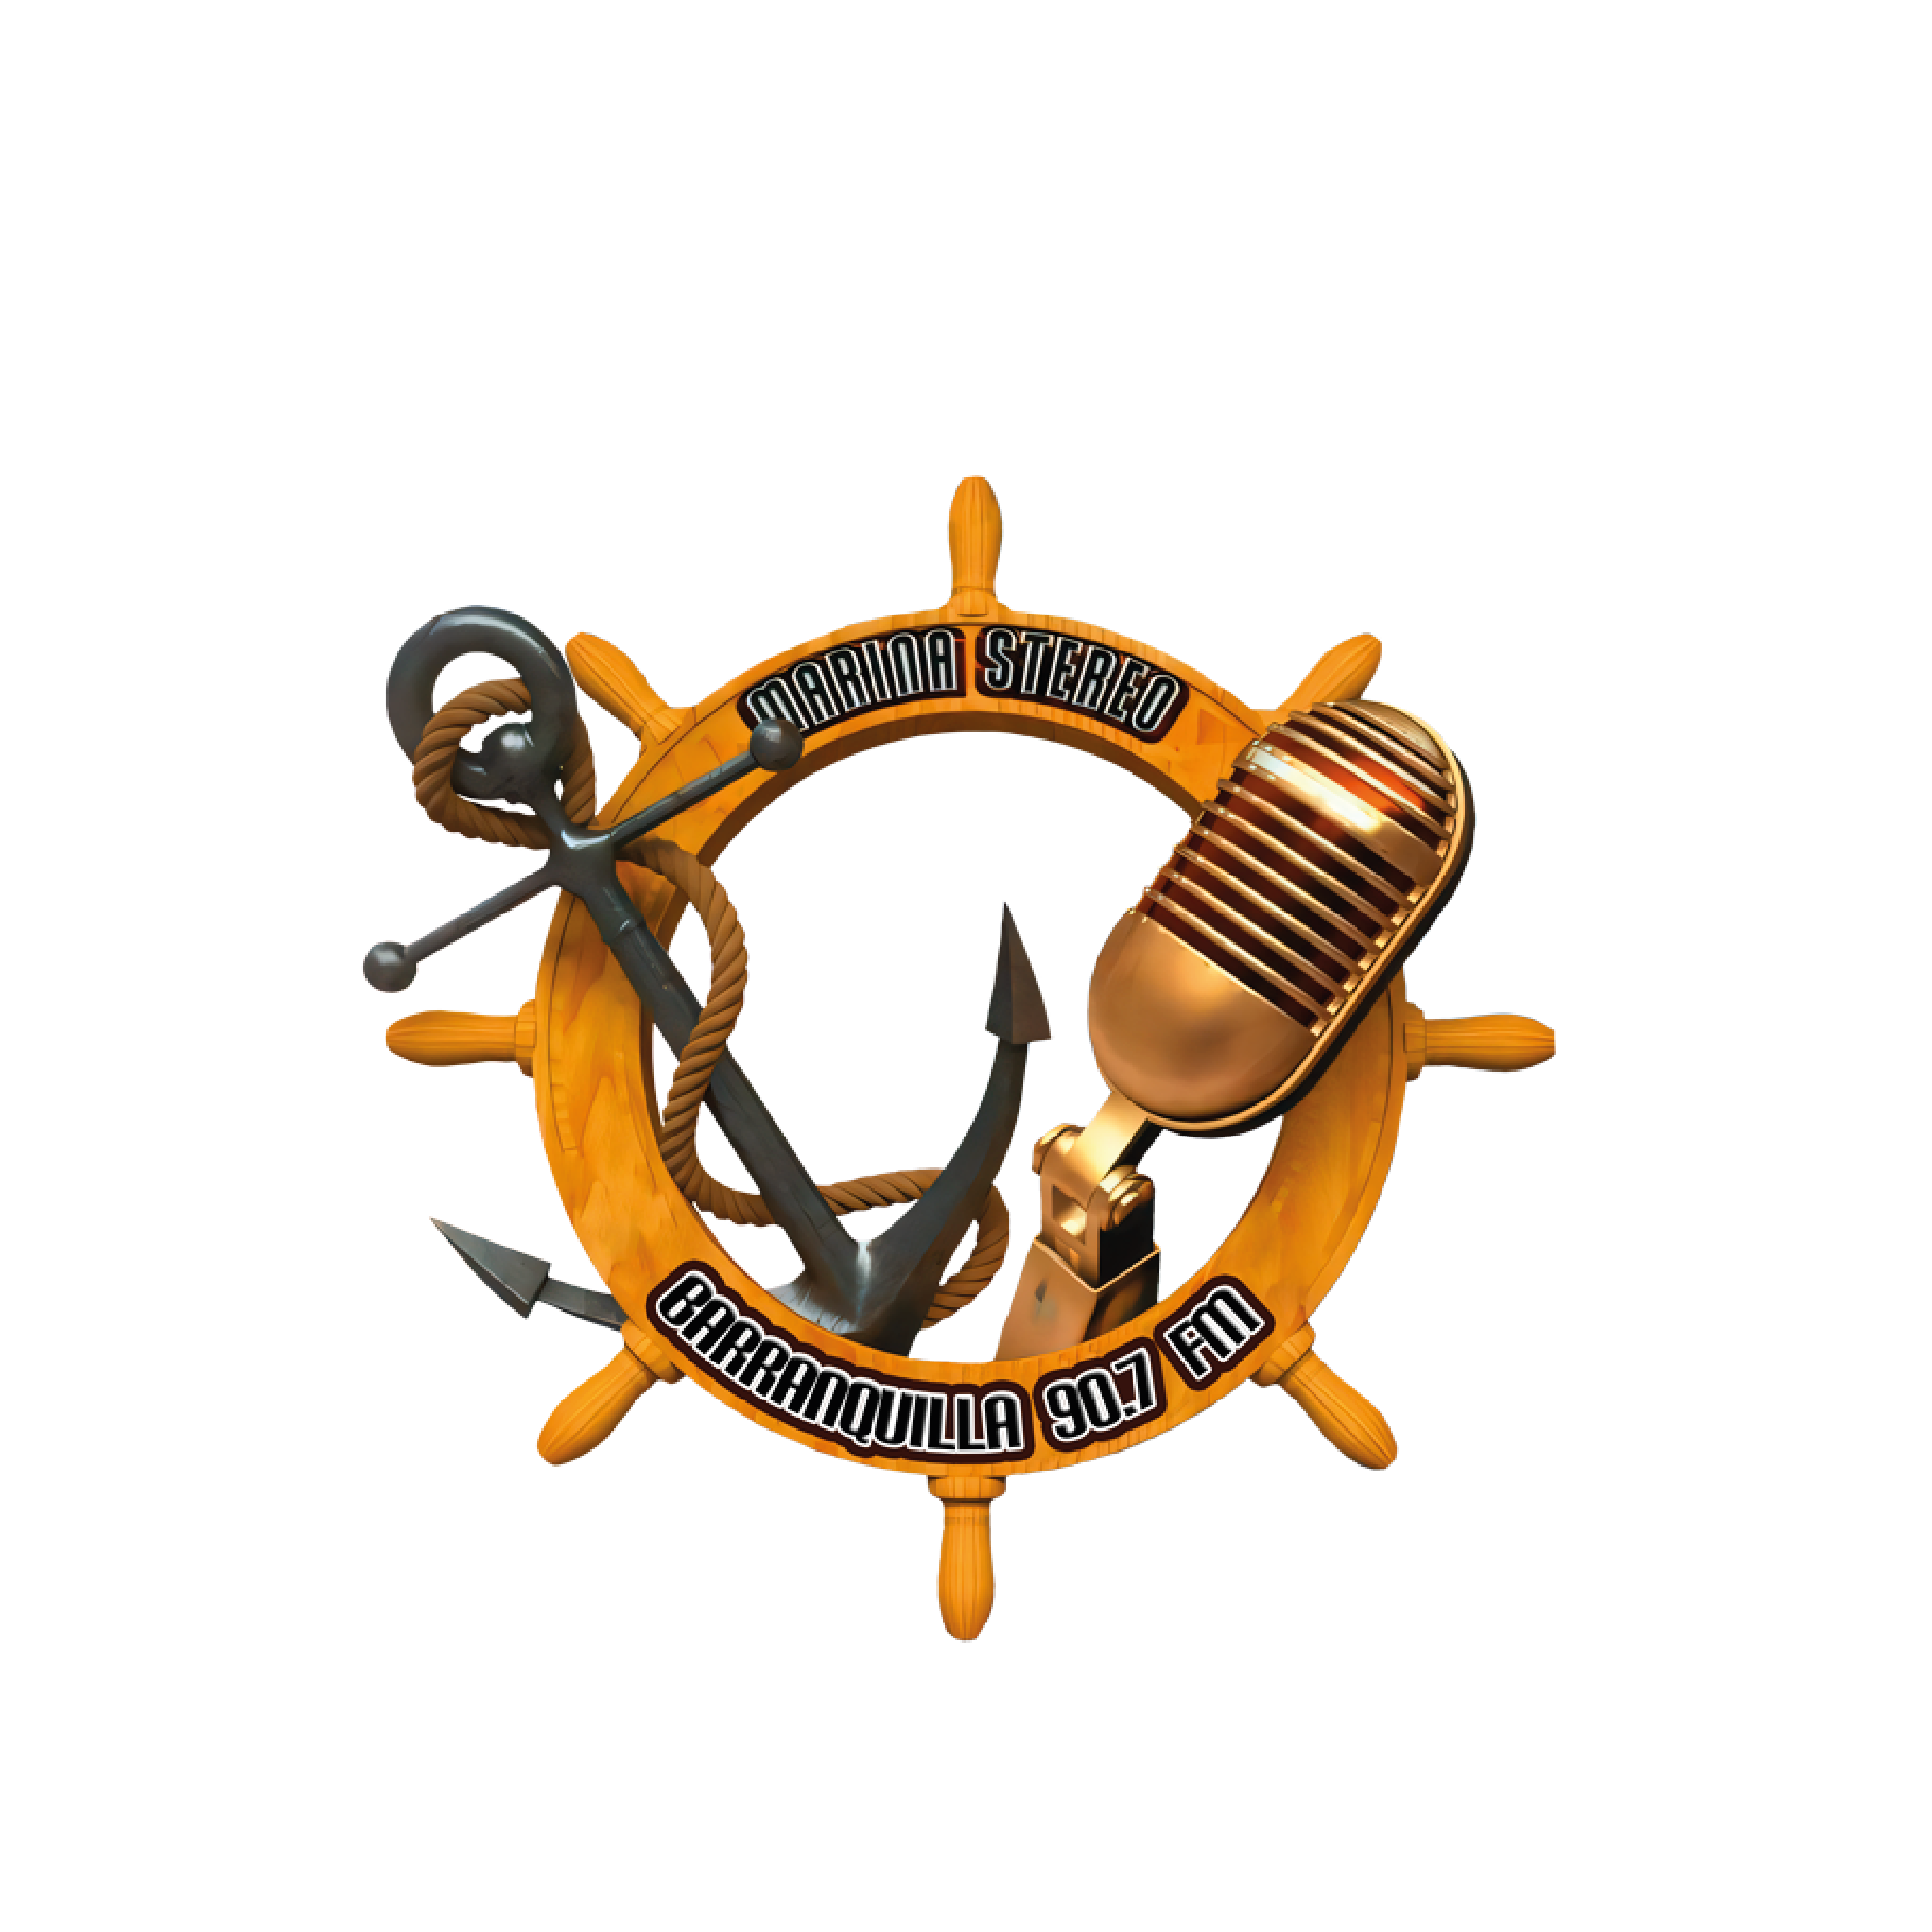 Marina Stereo Barranquilla